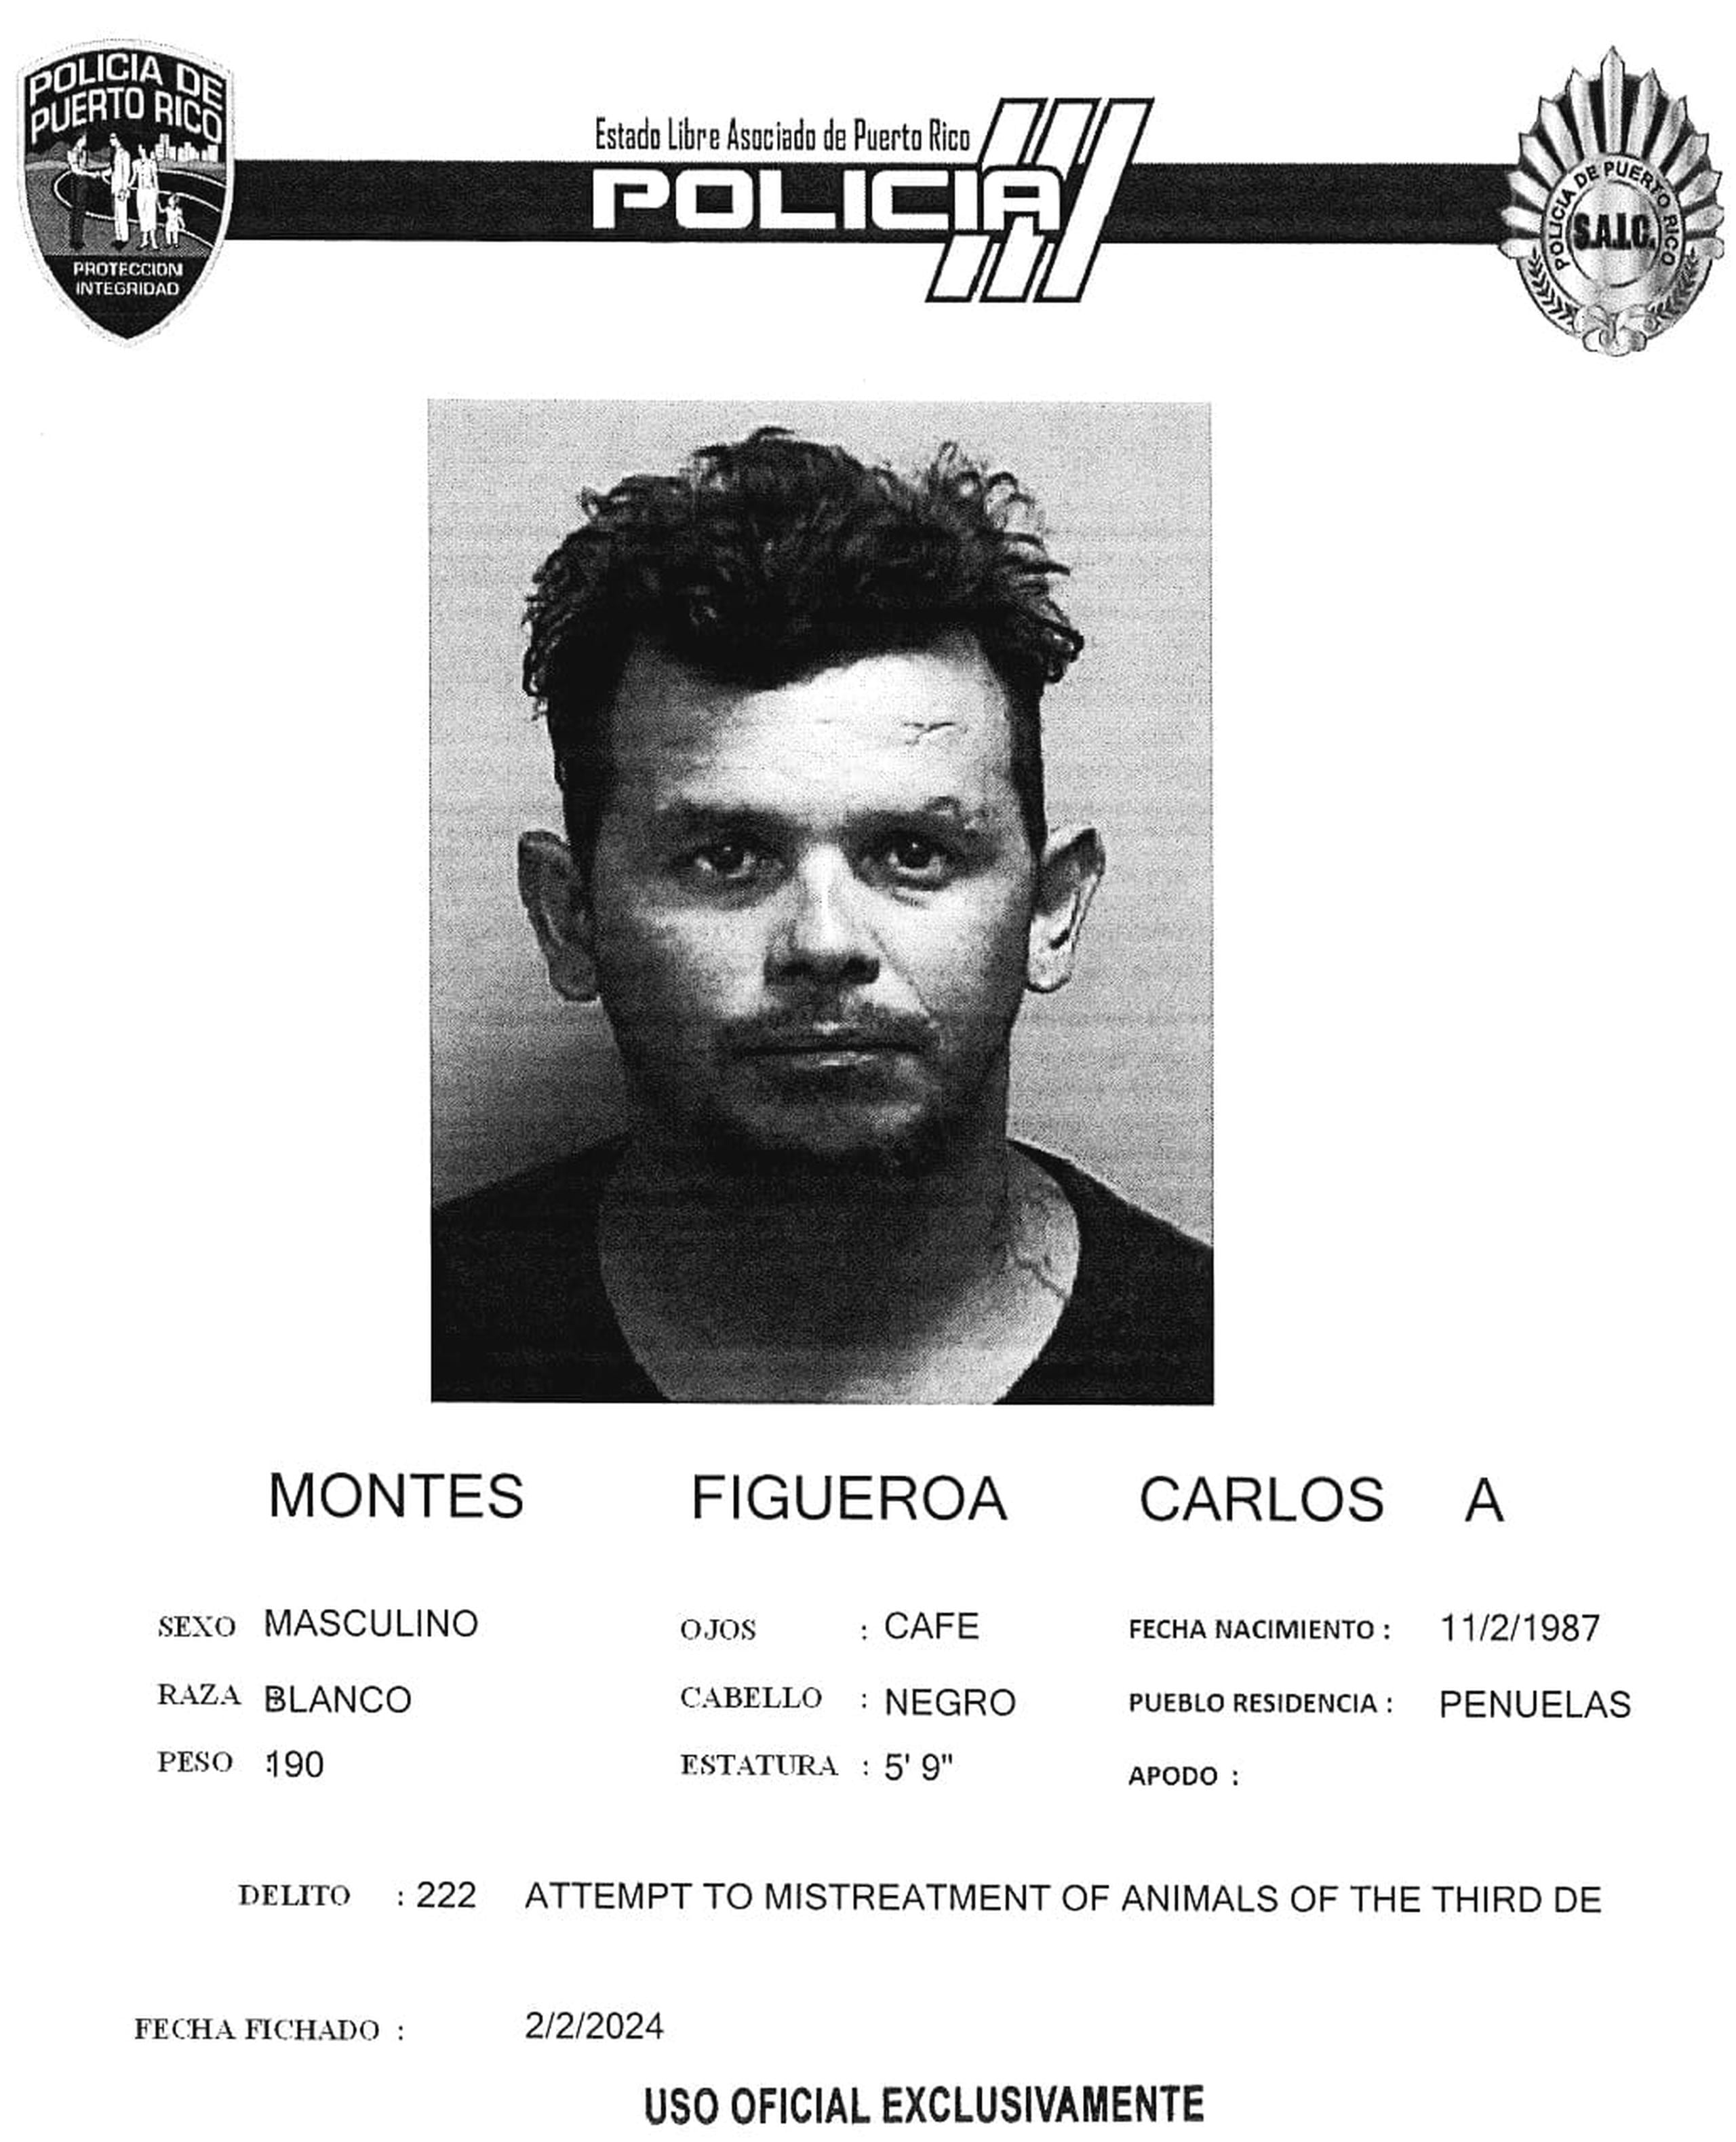 Carlos A. Montes Figueroa enfrenta cargos por violencia de género y maltrato de animales.